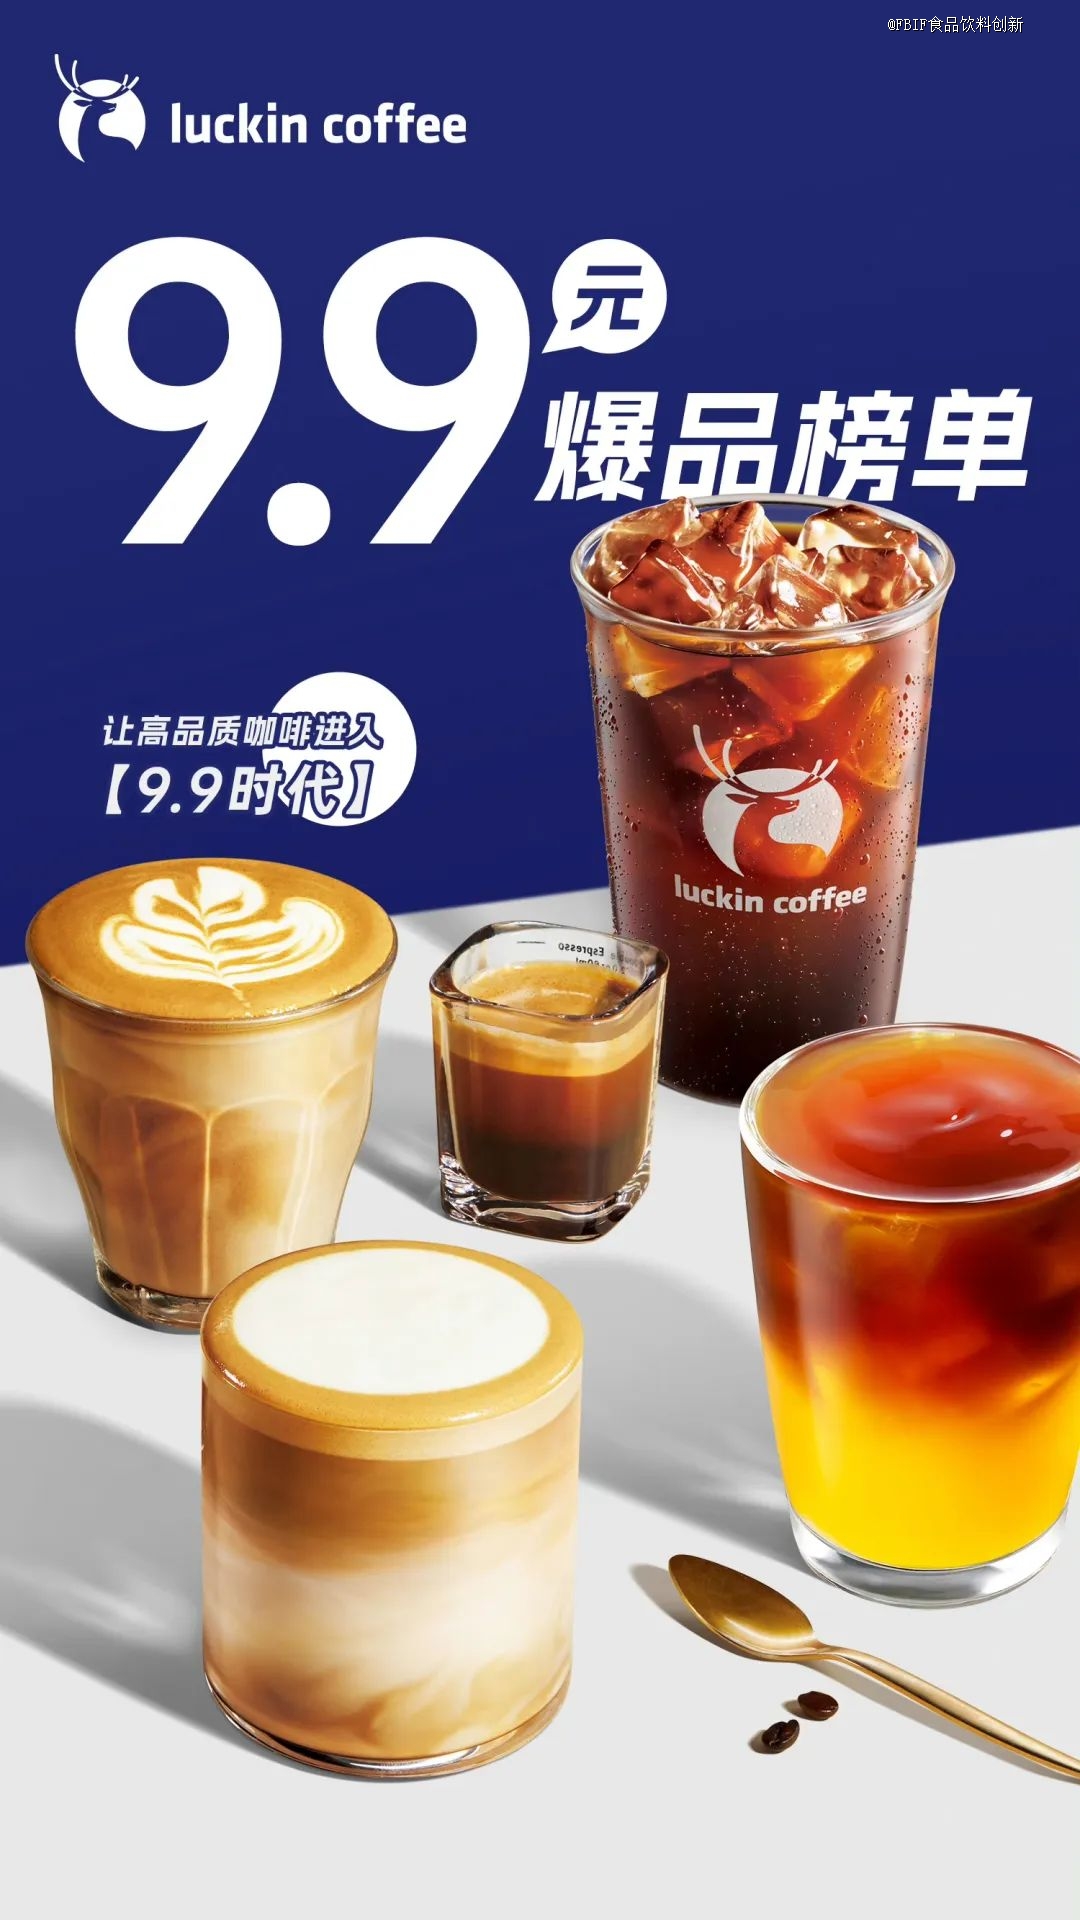 ​中国将咖啡馆开到全球第一，泡沫将破还是厚积薄发？